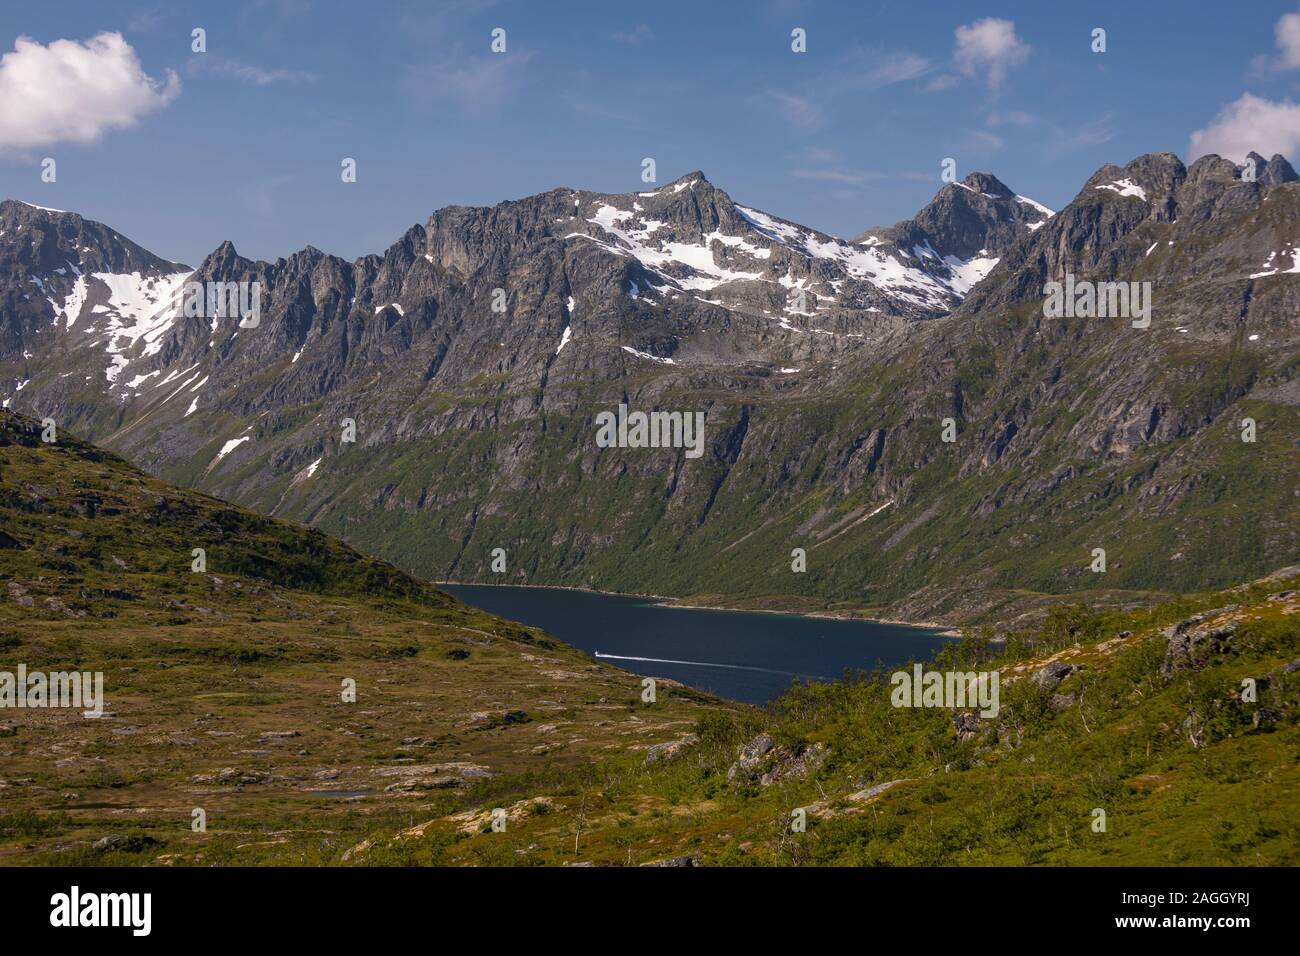 L'ÎLE DE KVALØYA, comté de Troms, NORVÈGE - Ersfjorden fjord et paysage de montagne dans le nord de la Norvège. Banque D'Images